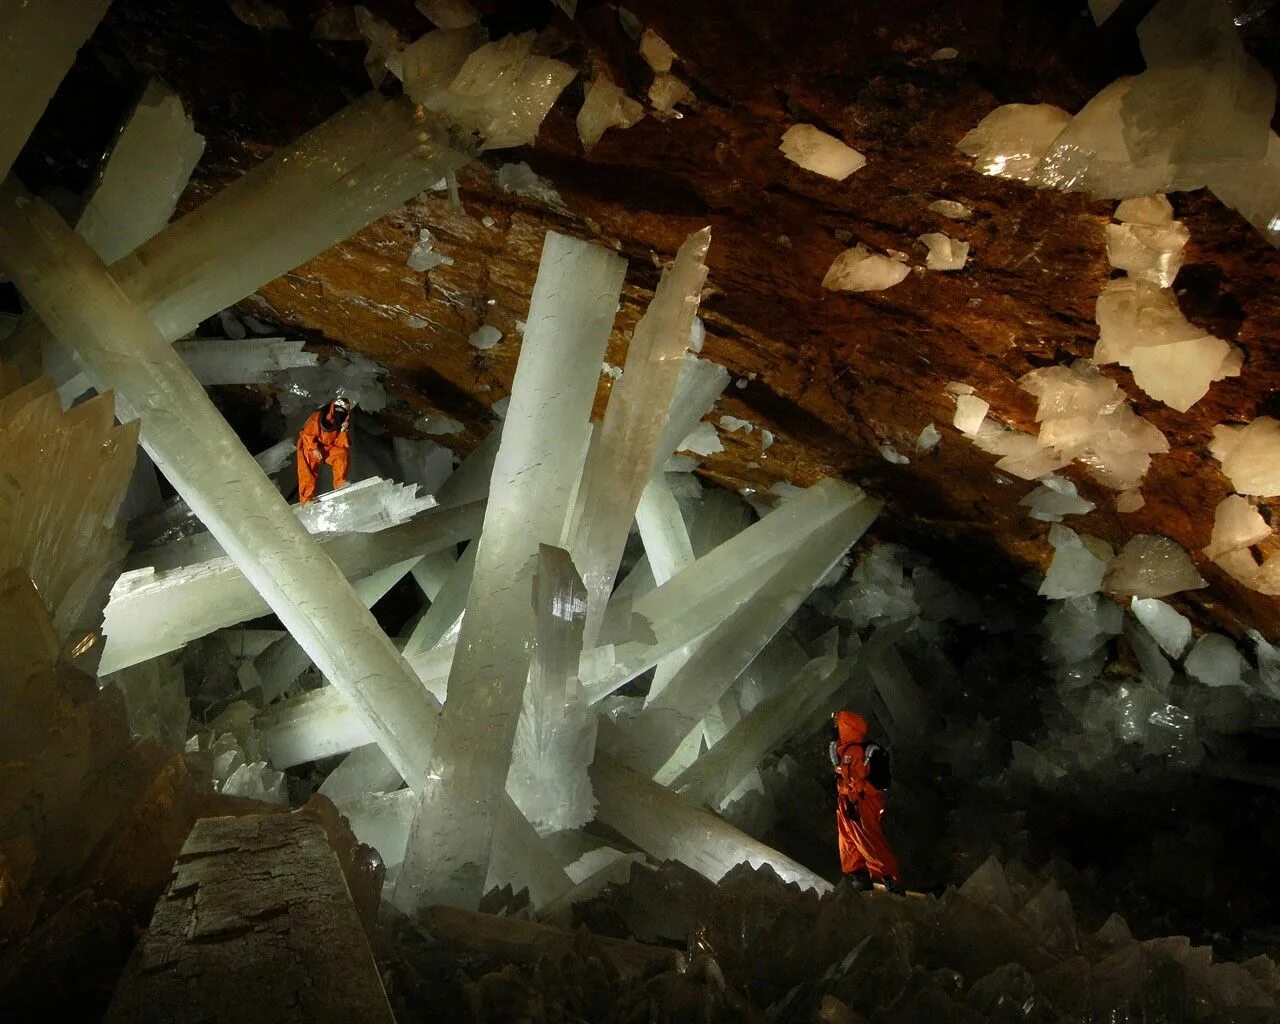 Кристалл шахты. Пещера кристаллов (Cueva de los cristales), Мексика. Пещера Куэва де Лос Кристалес. Пещера кристаллов гигантов в Мексике. Шахта Найка, Мексика.